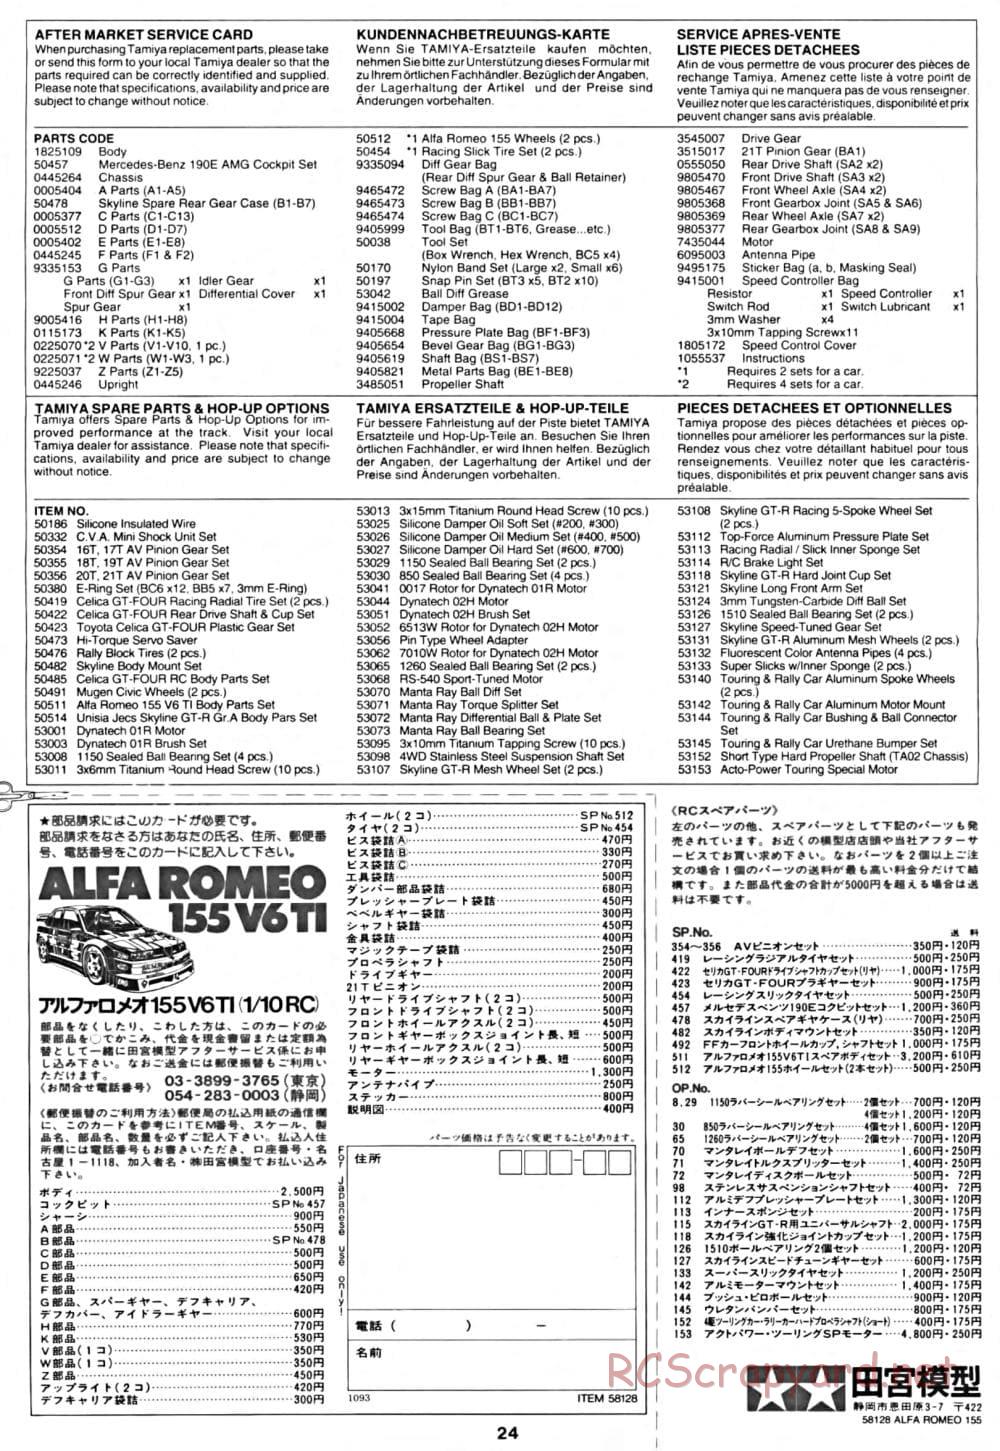 Tamiya - Alfa Romeo 155 V6 TI - TA-02 Chassis - Manual - Page 24